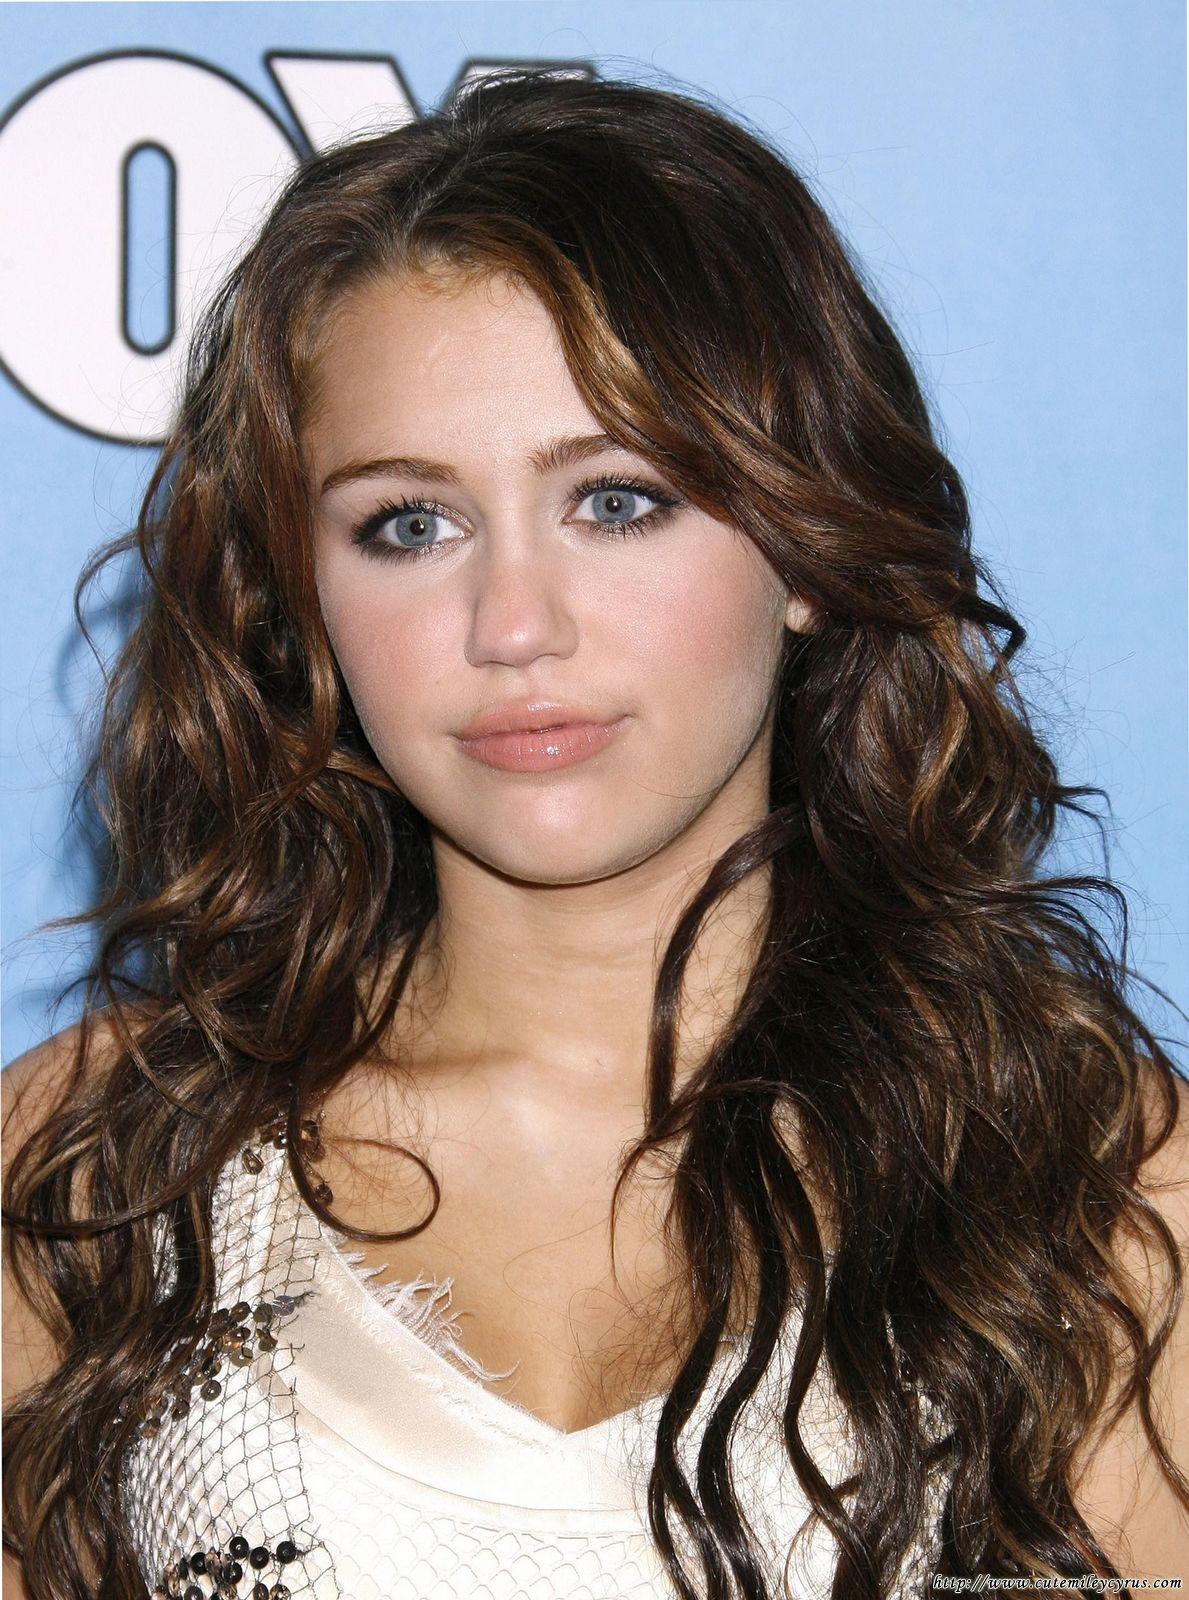 http://4.bp.blogspot.com/-rcLUmuadAug/T9XNen1uJRI/AAAAAAAACP8/ADF8WL1Ol0c/s1600/Miley+Cyrus+Pictures+10.jpg